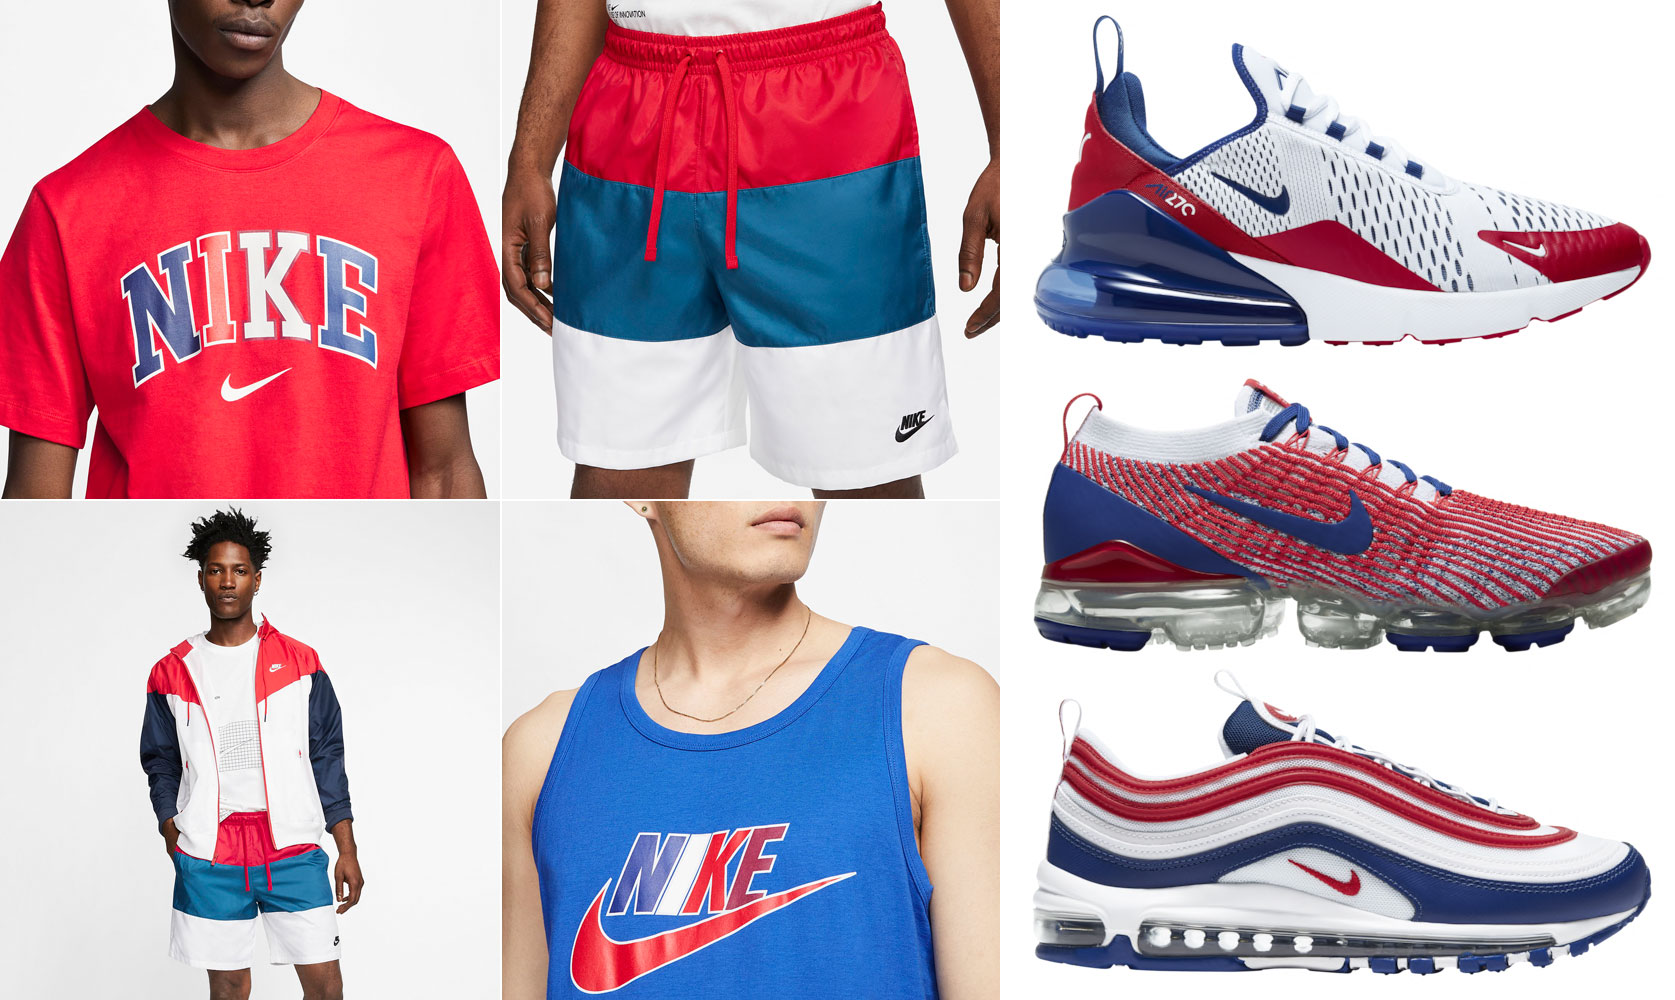 Сайт найки сша. Дрилл стиль найк. Найк Дрилл Nike. Nike 2020 одежда. Nike коллекция USA.